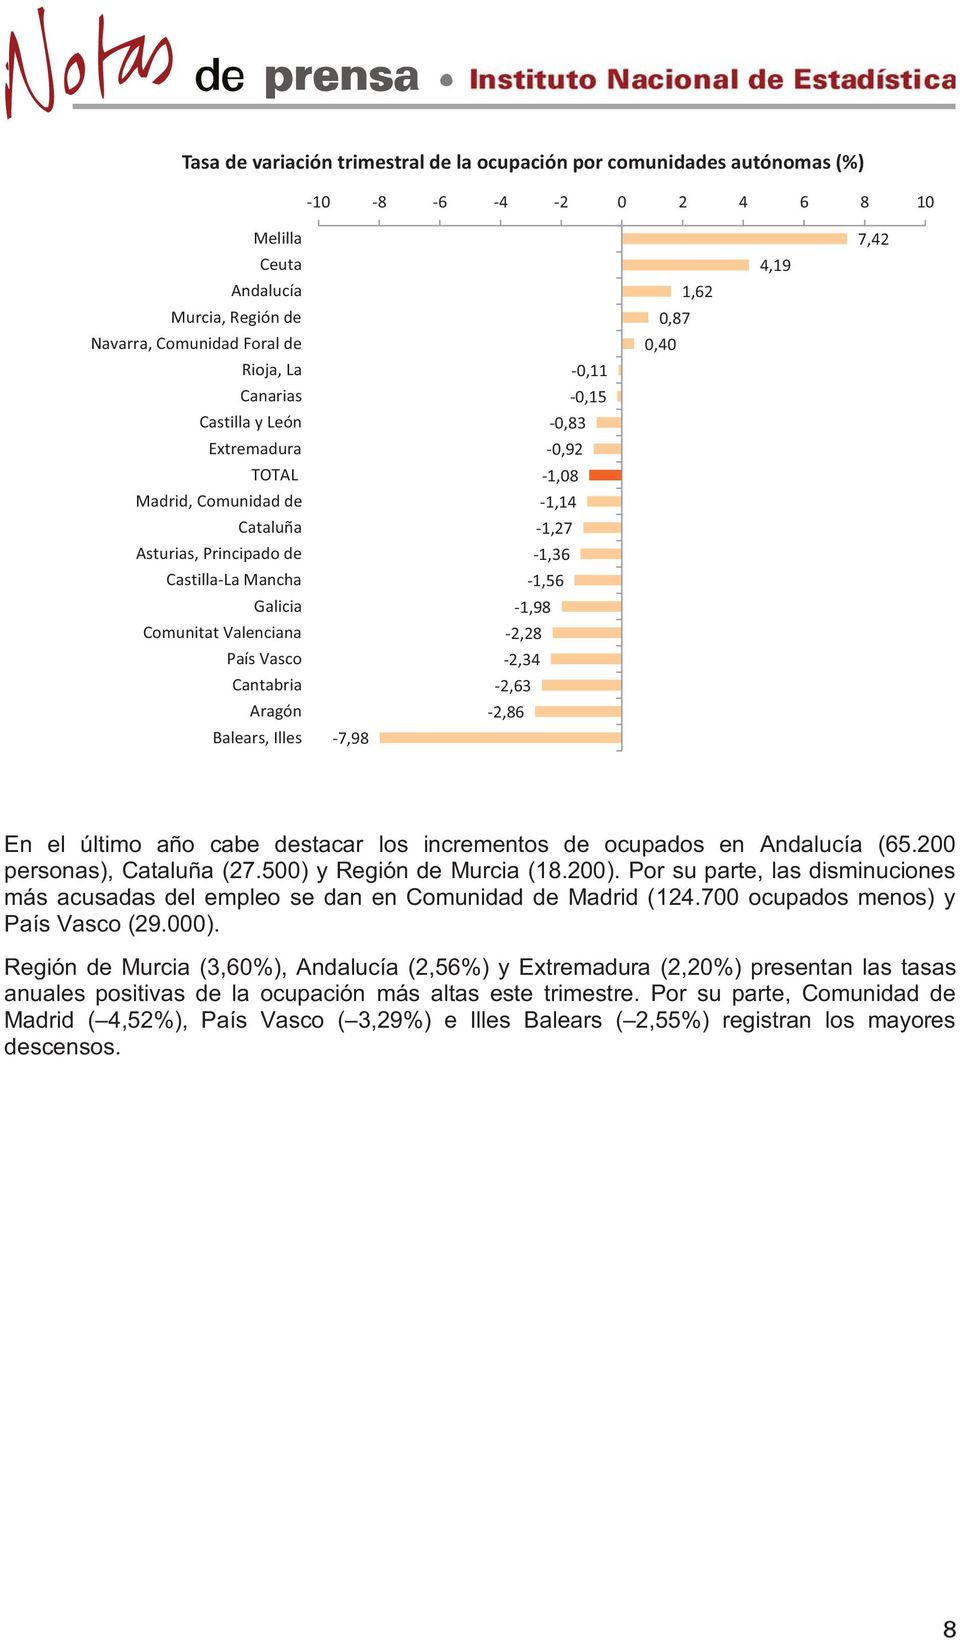 -7,98-0,11-0,15-0,83-0,92-1,08-1,14-1,27-1,36-1,56-1,98-2,28-2,34-2,63-2,86 0,87 0,40 1,62 4,19 7,42 En el último año cabe destacar los incrementos de ocupados en Andalucía (65.